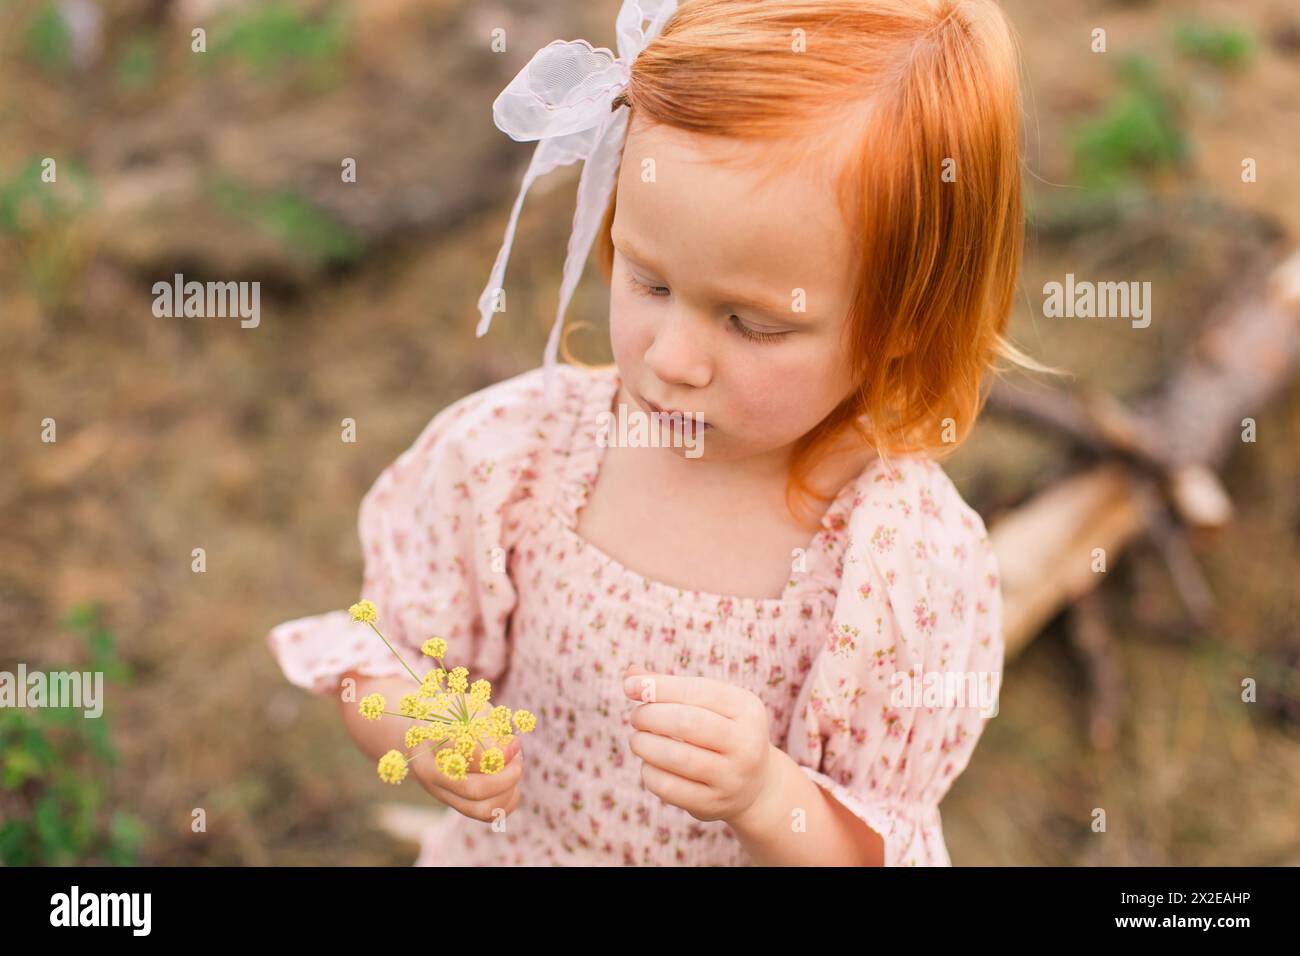 Petite fille aux cheveux rouges regardant des fleurs sauvages jaunes Banque D'Images